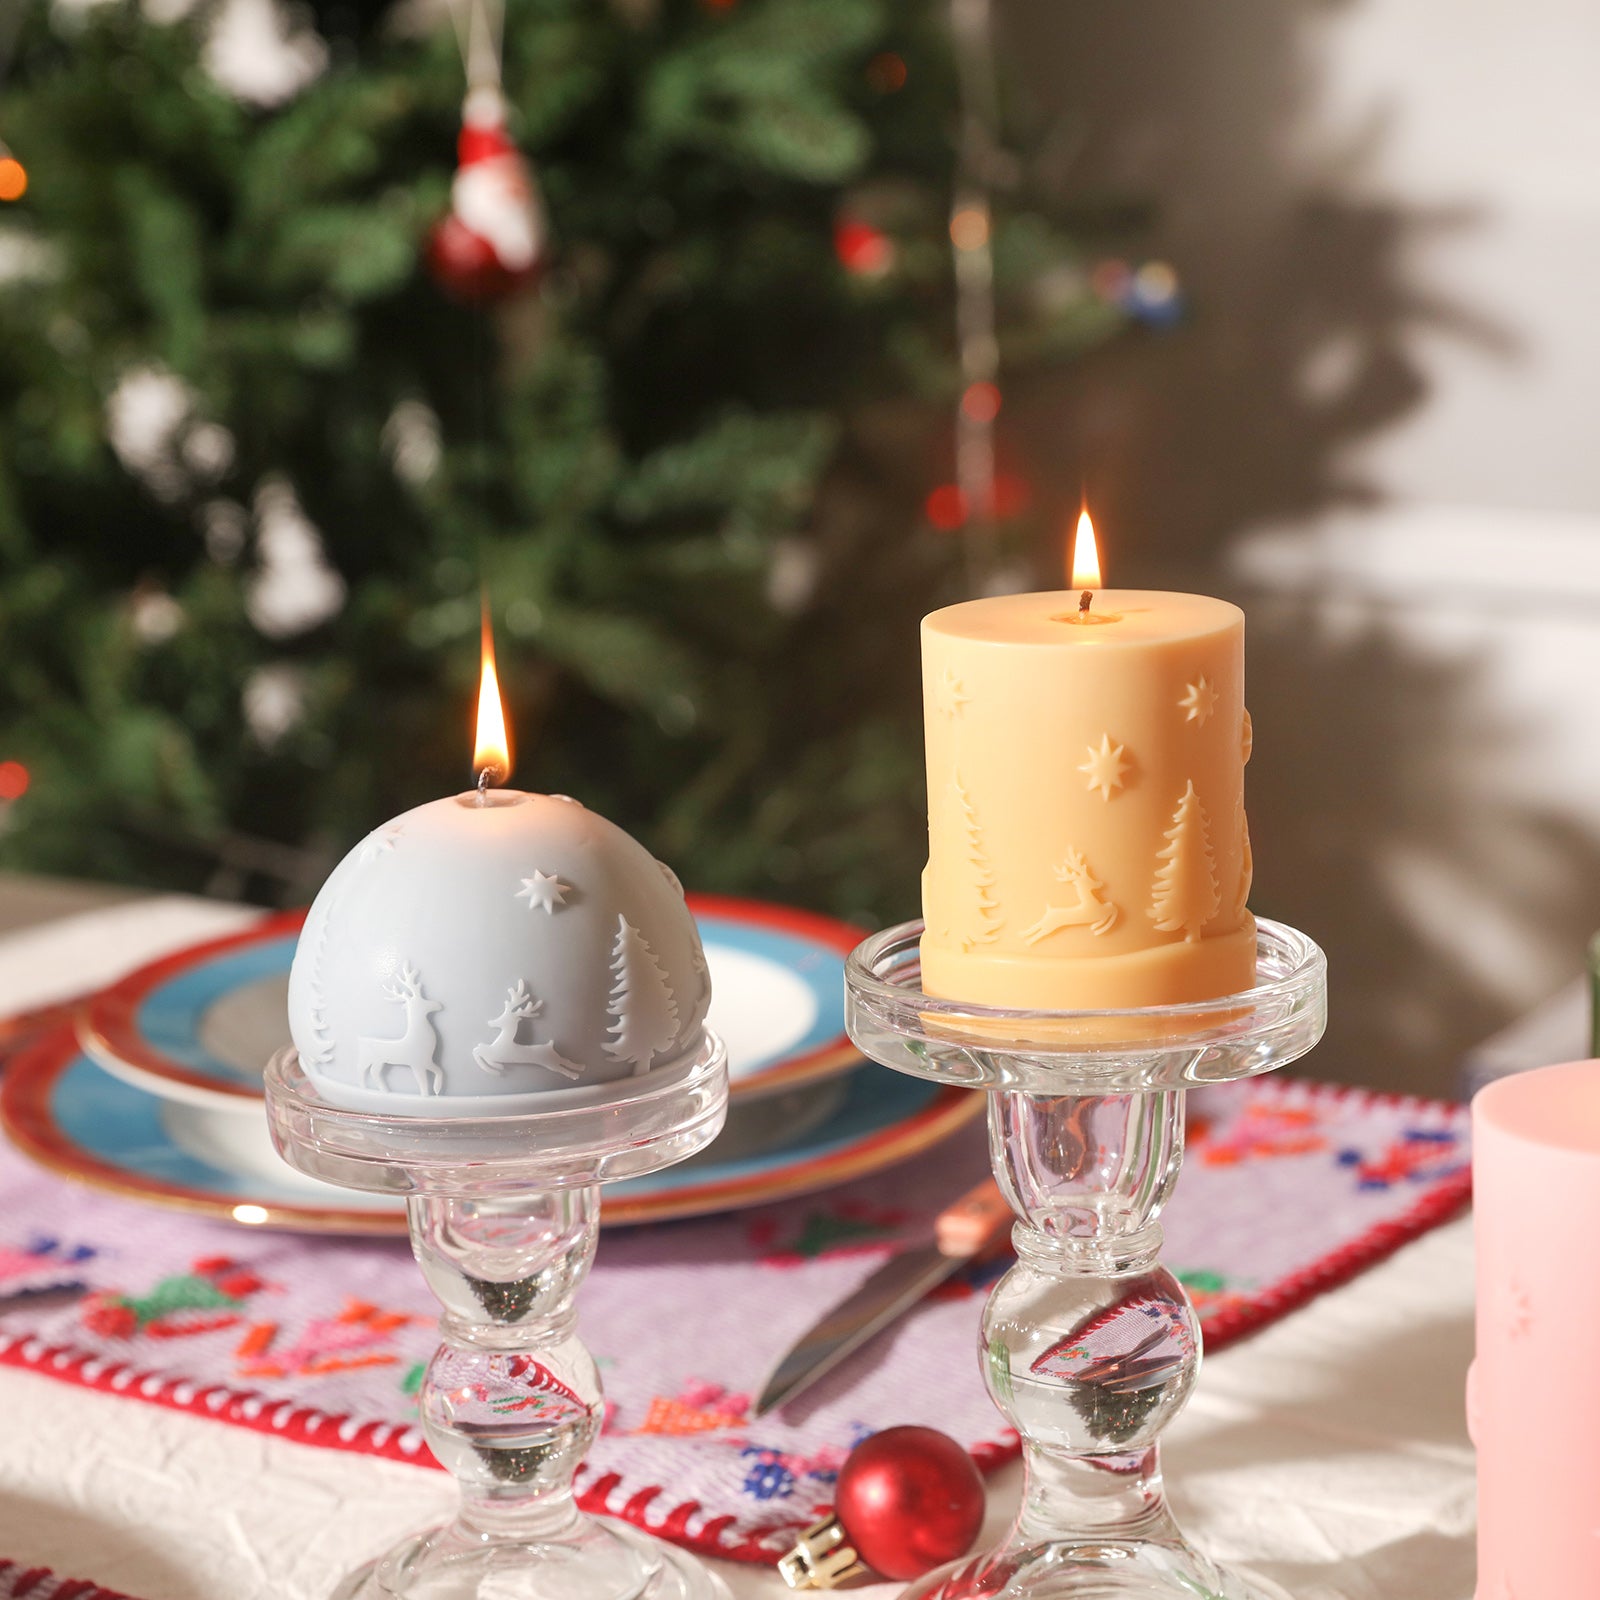 Candle Shop - Juego de moldes para velas (4 moldes para velas) - Moldes de  plástico para velas